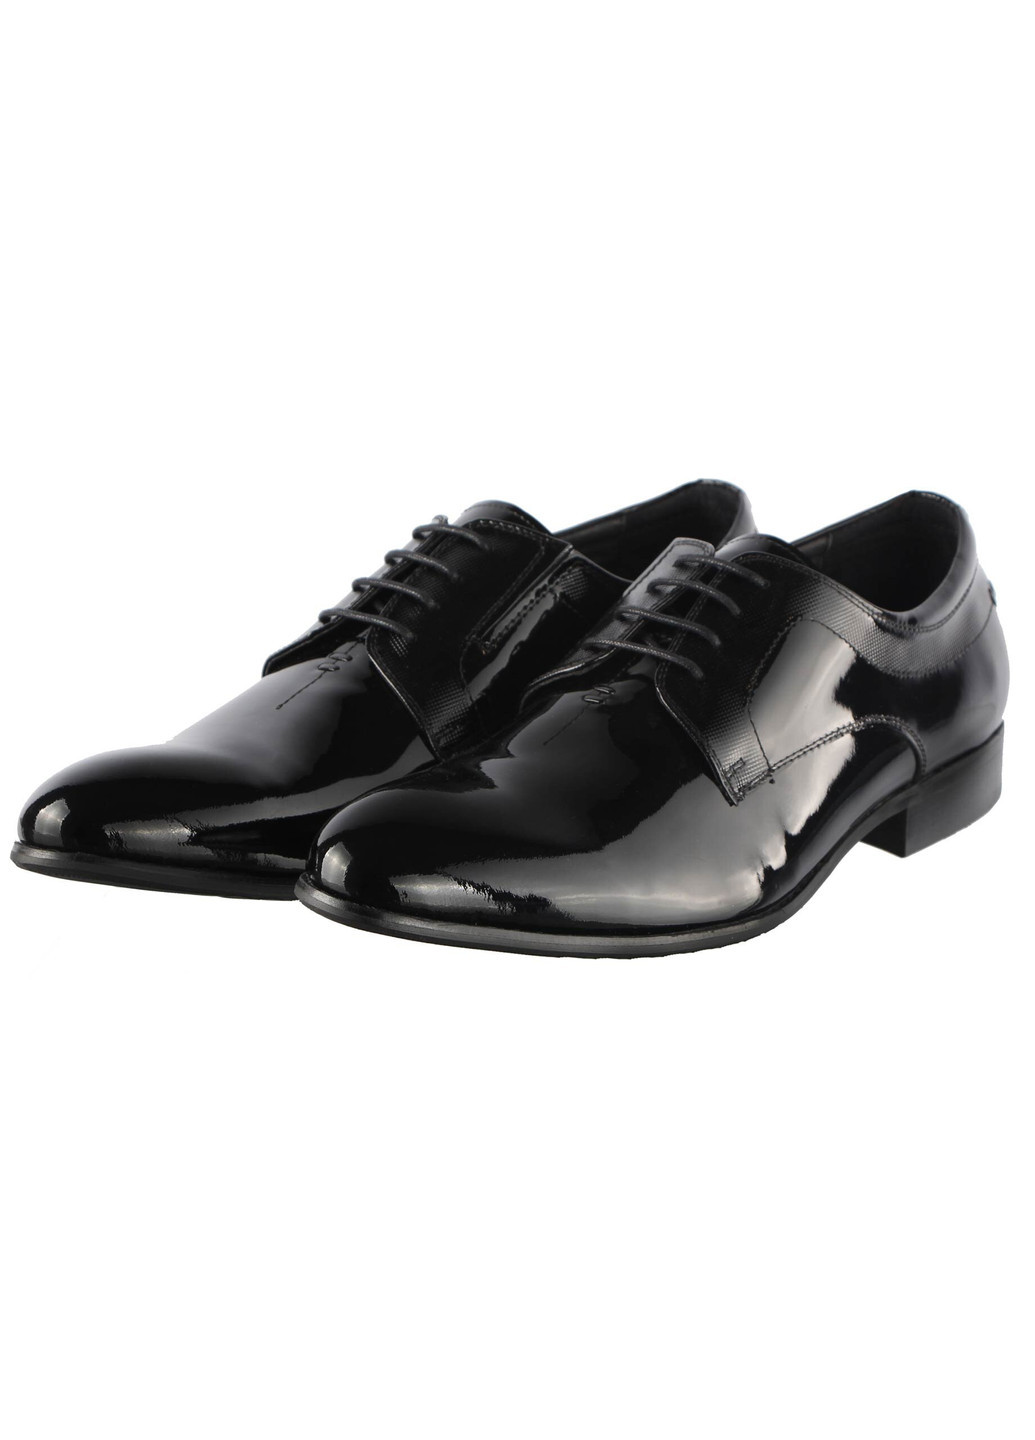 Черные мужские классические туфли 011808 Cosottinni на шнурках